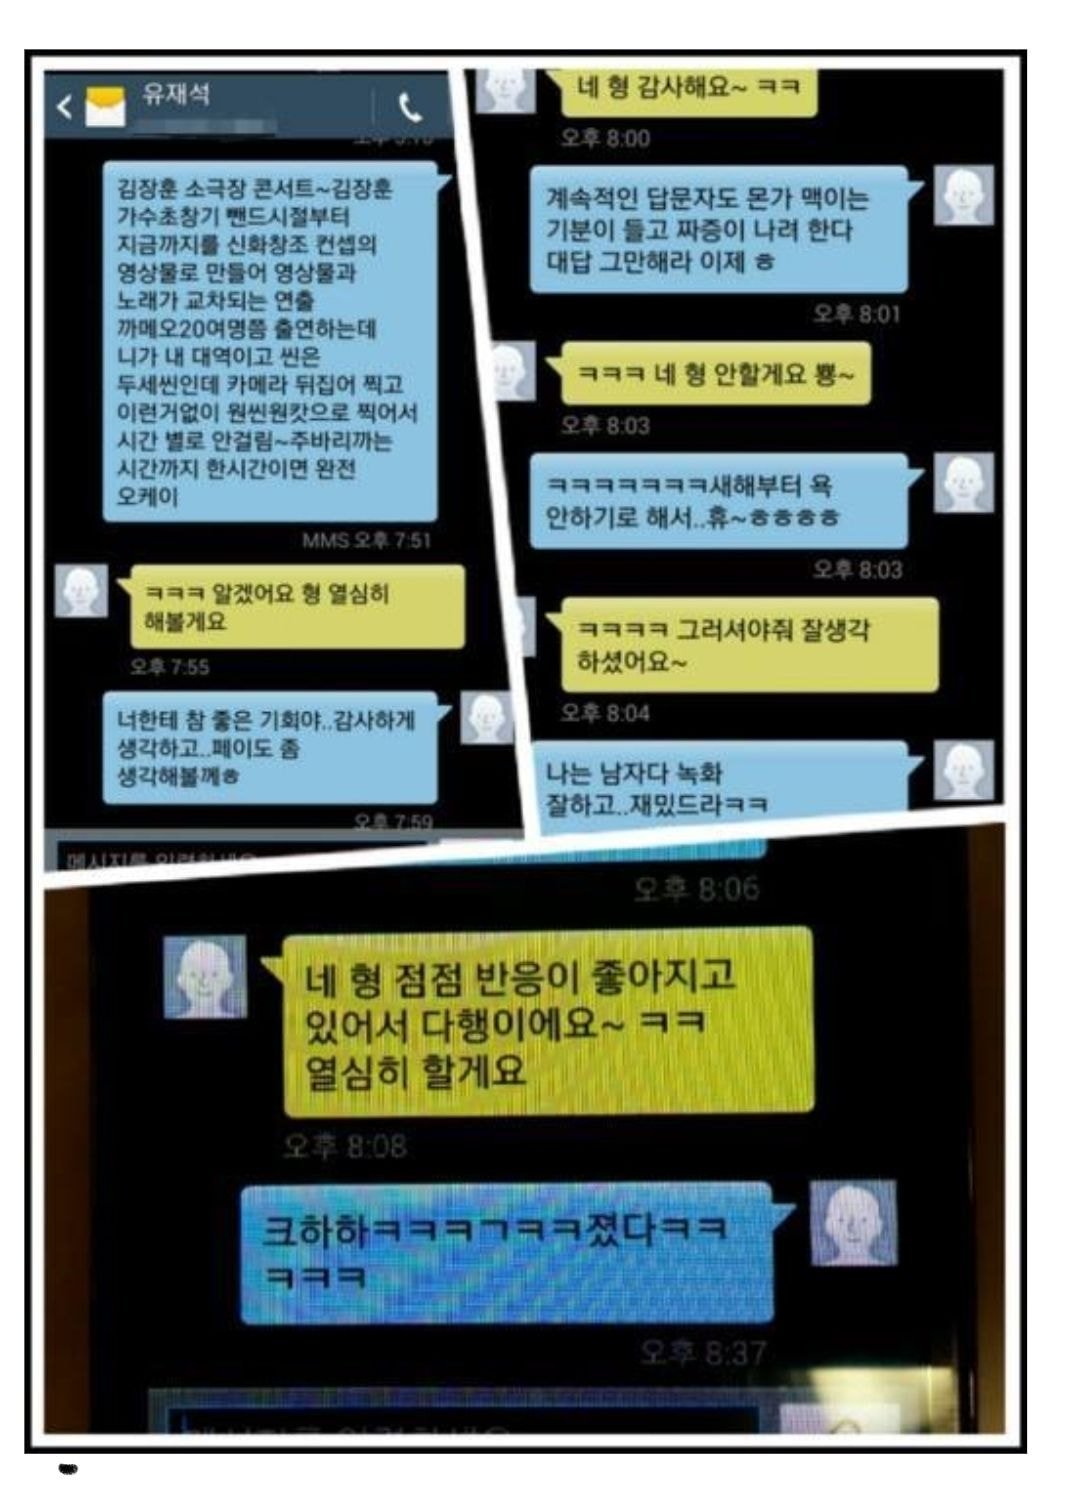 유재석과 김장훈과의 문자 대화